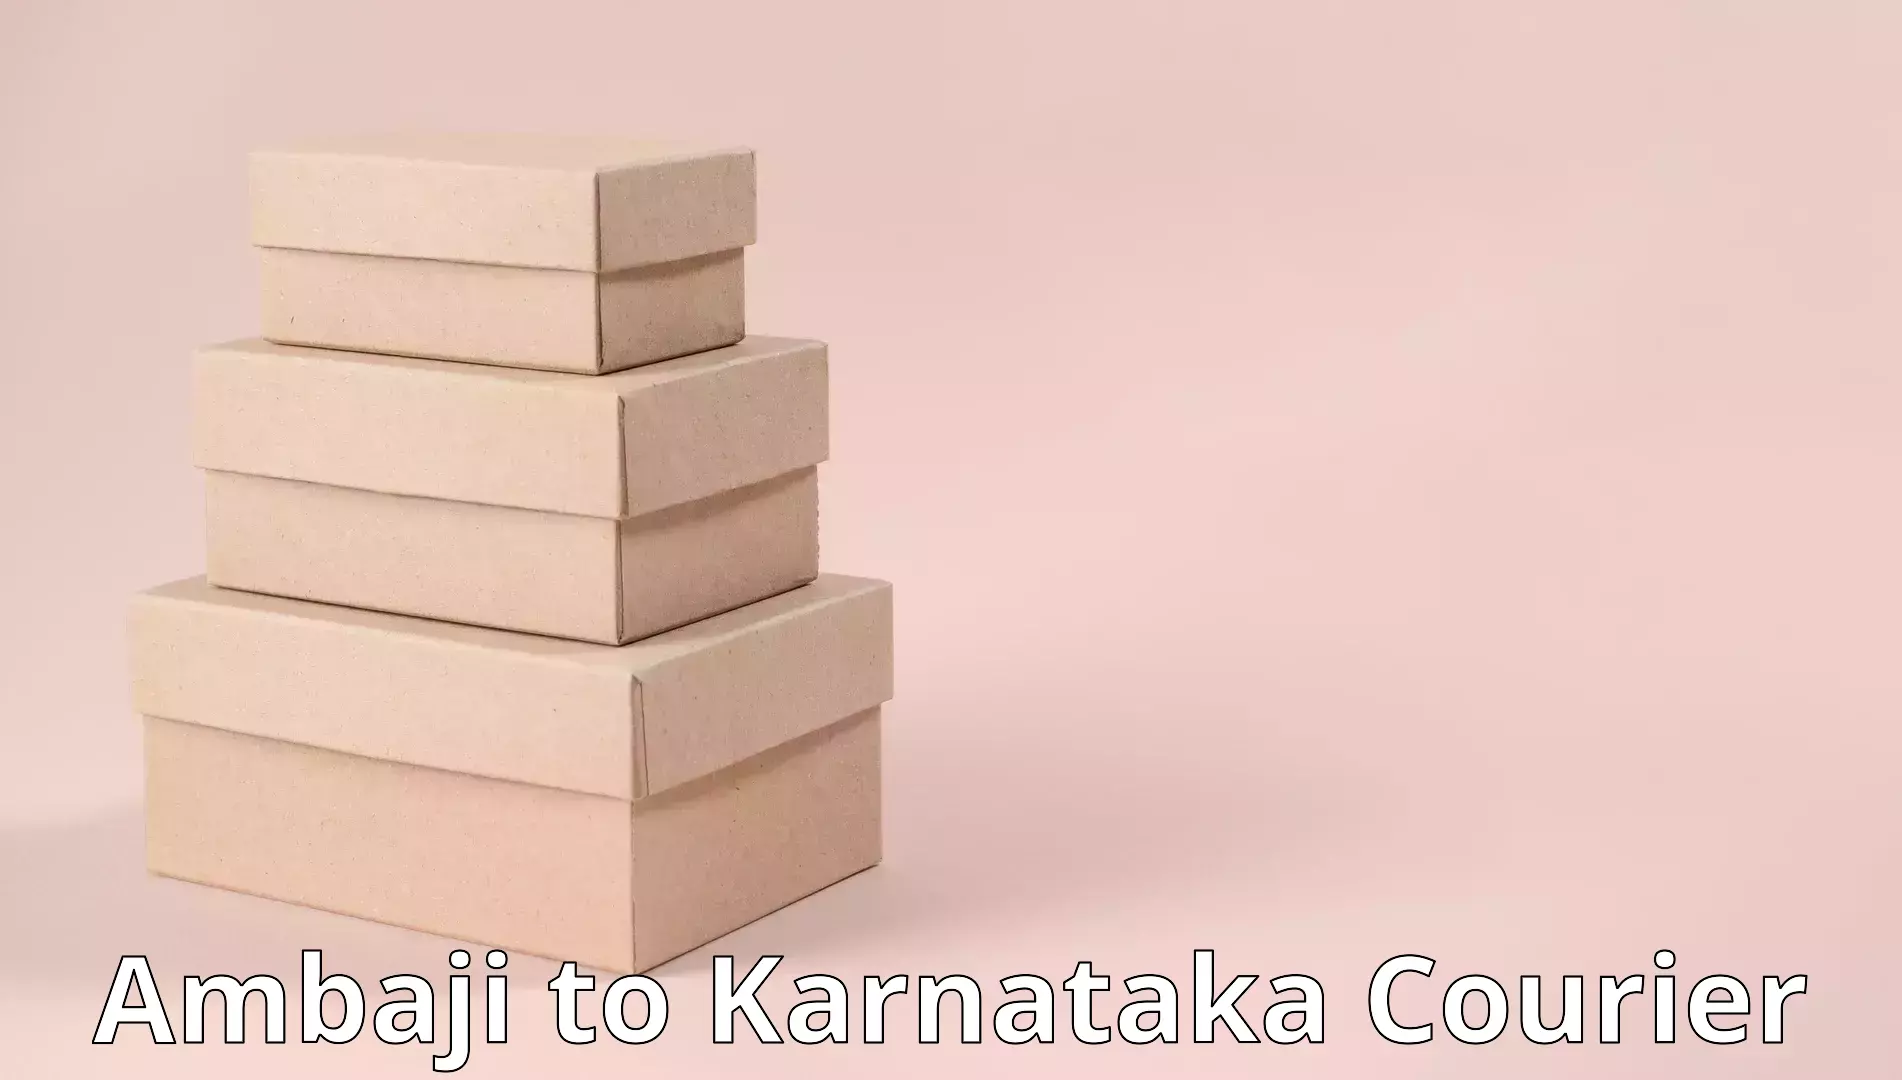 Furniture moving services Ambaji to Karnataka